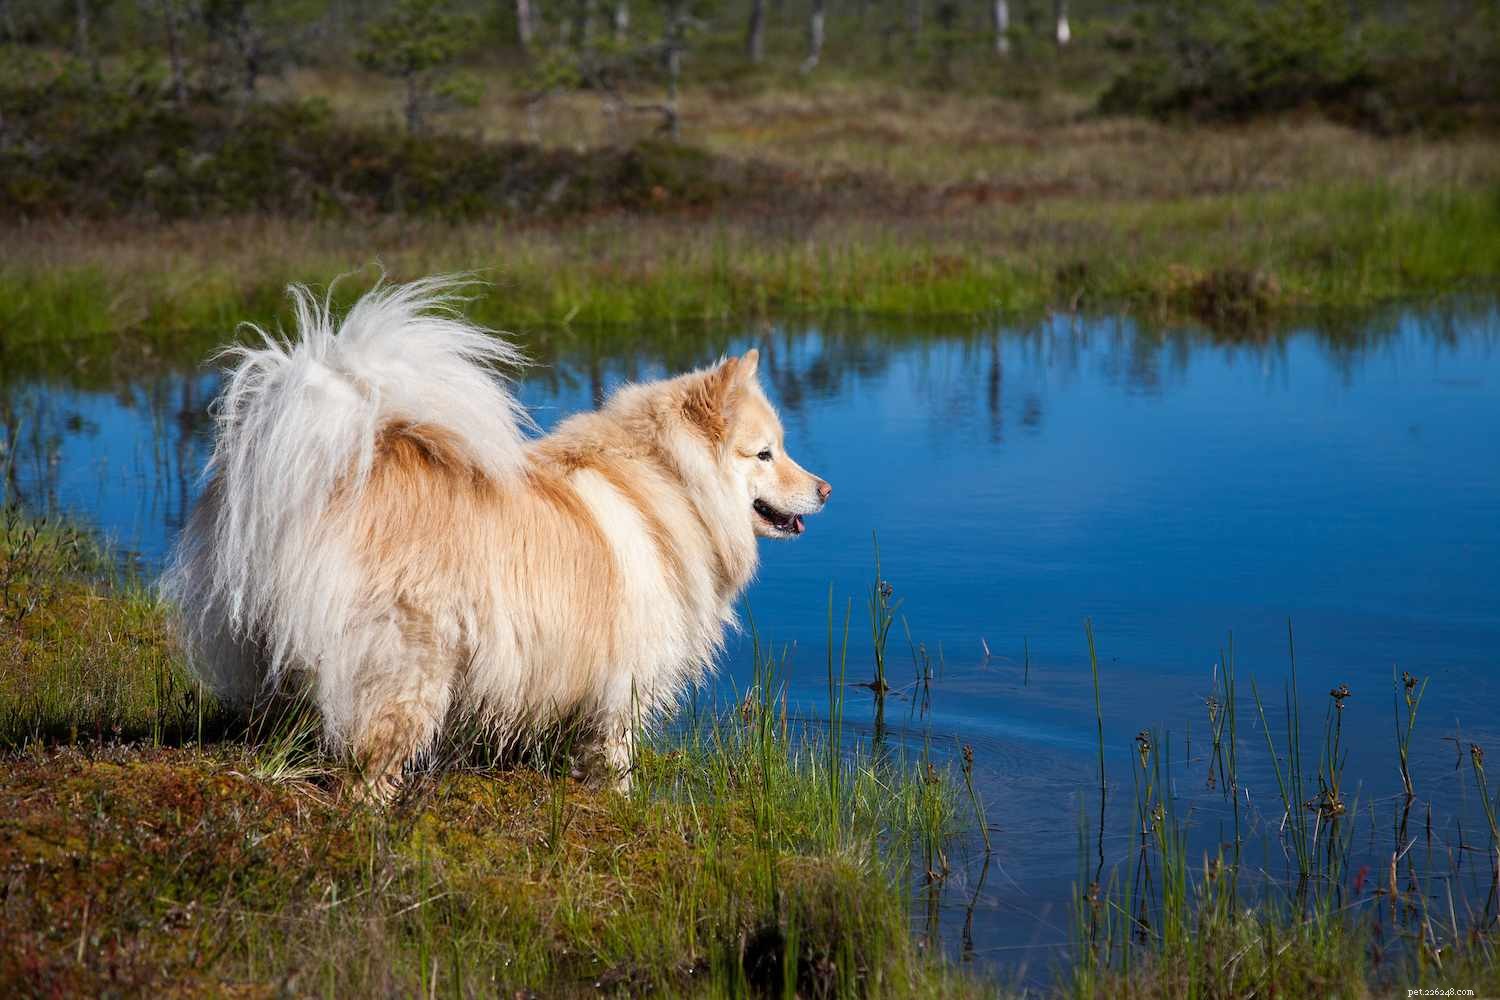 Lapphund finlandese:profilo della razza canina